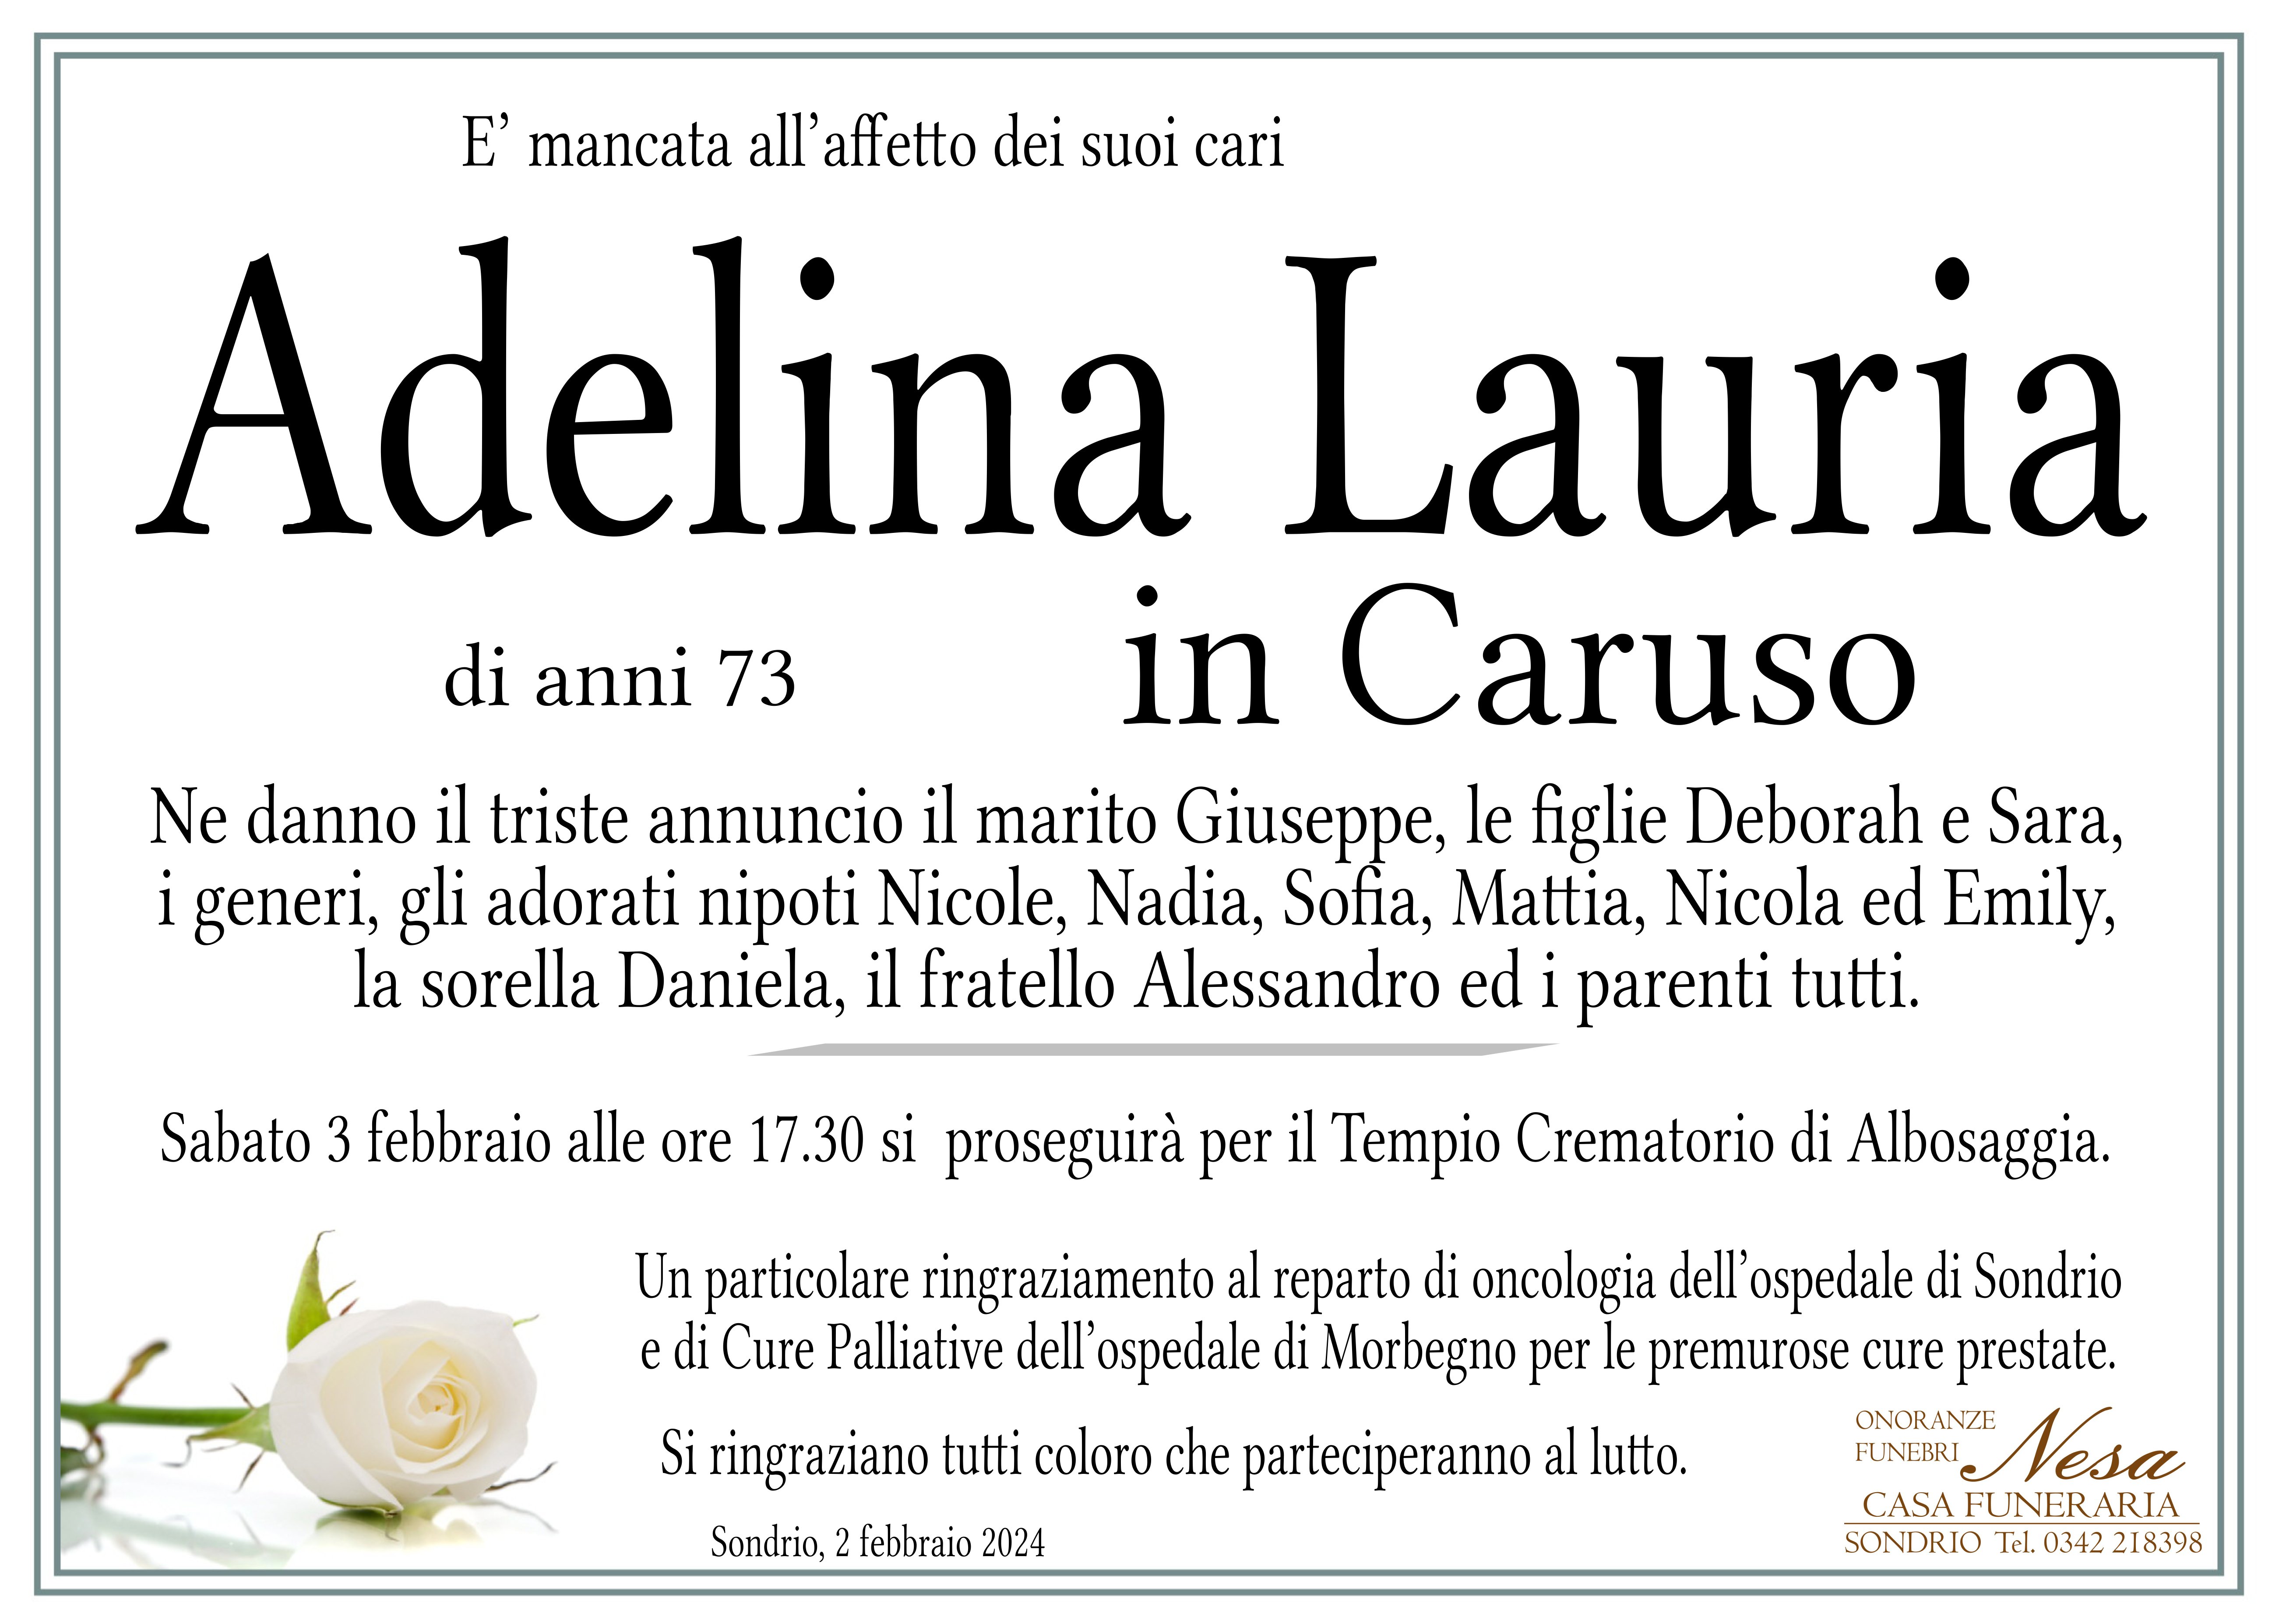 Necrologio Adelina Lauria in caruso